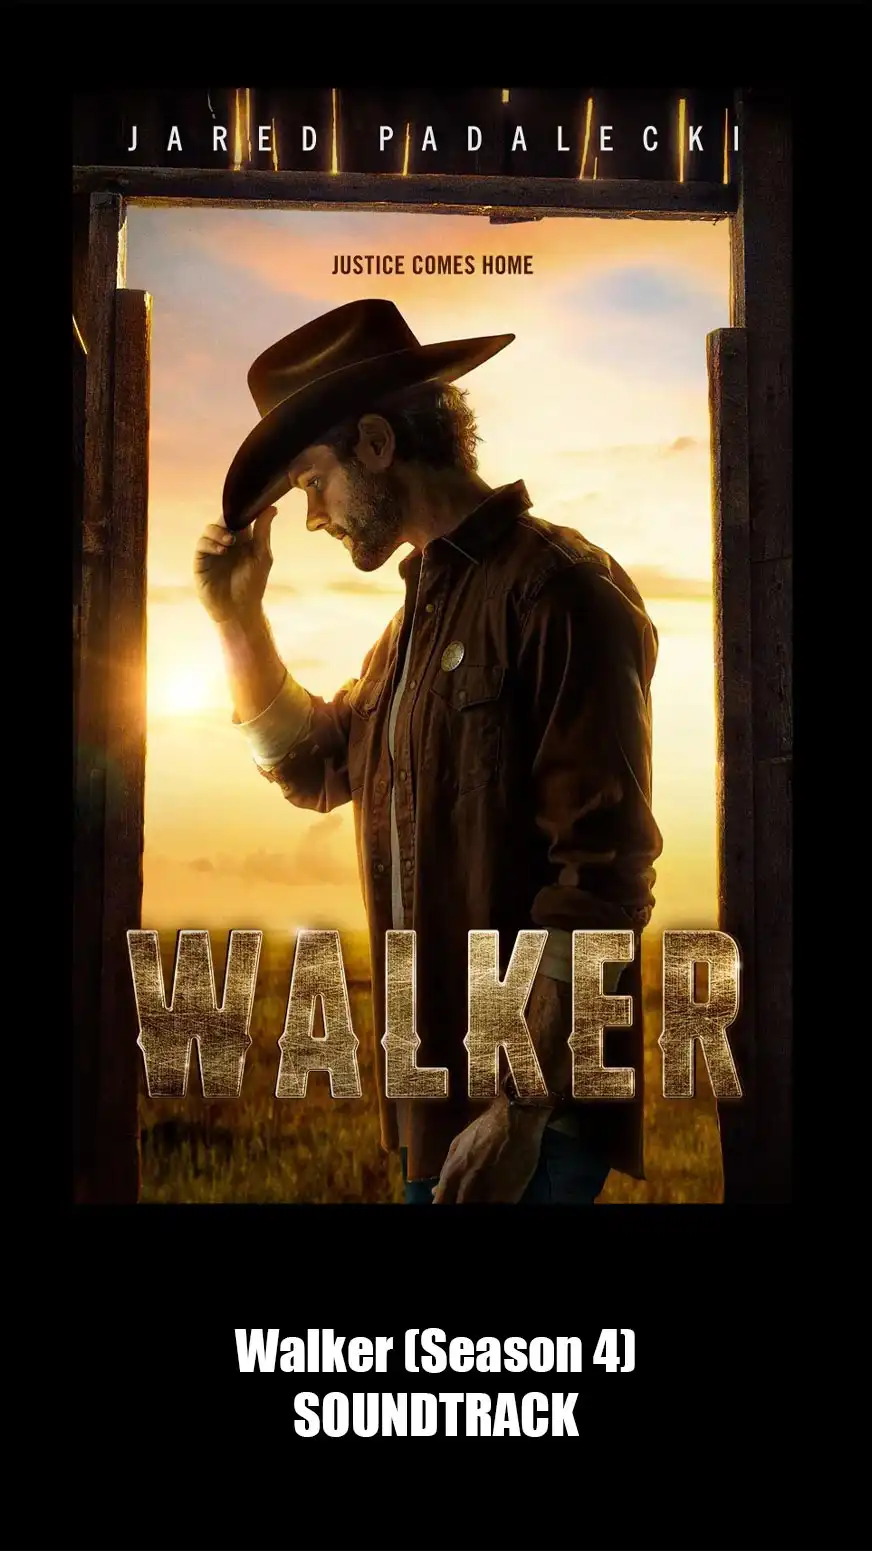 Walker Season 4 Soundtrack